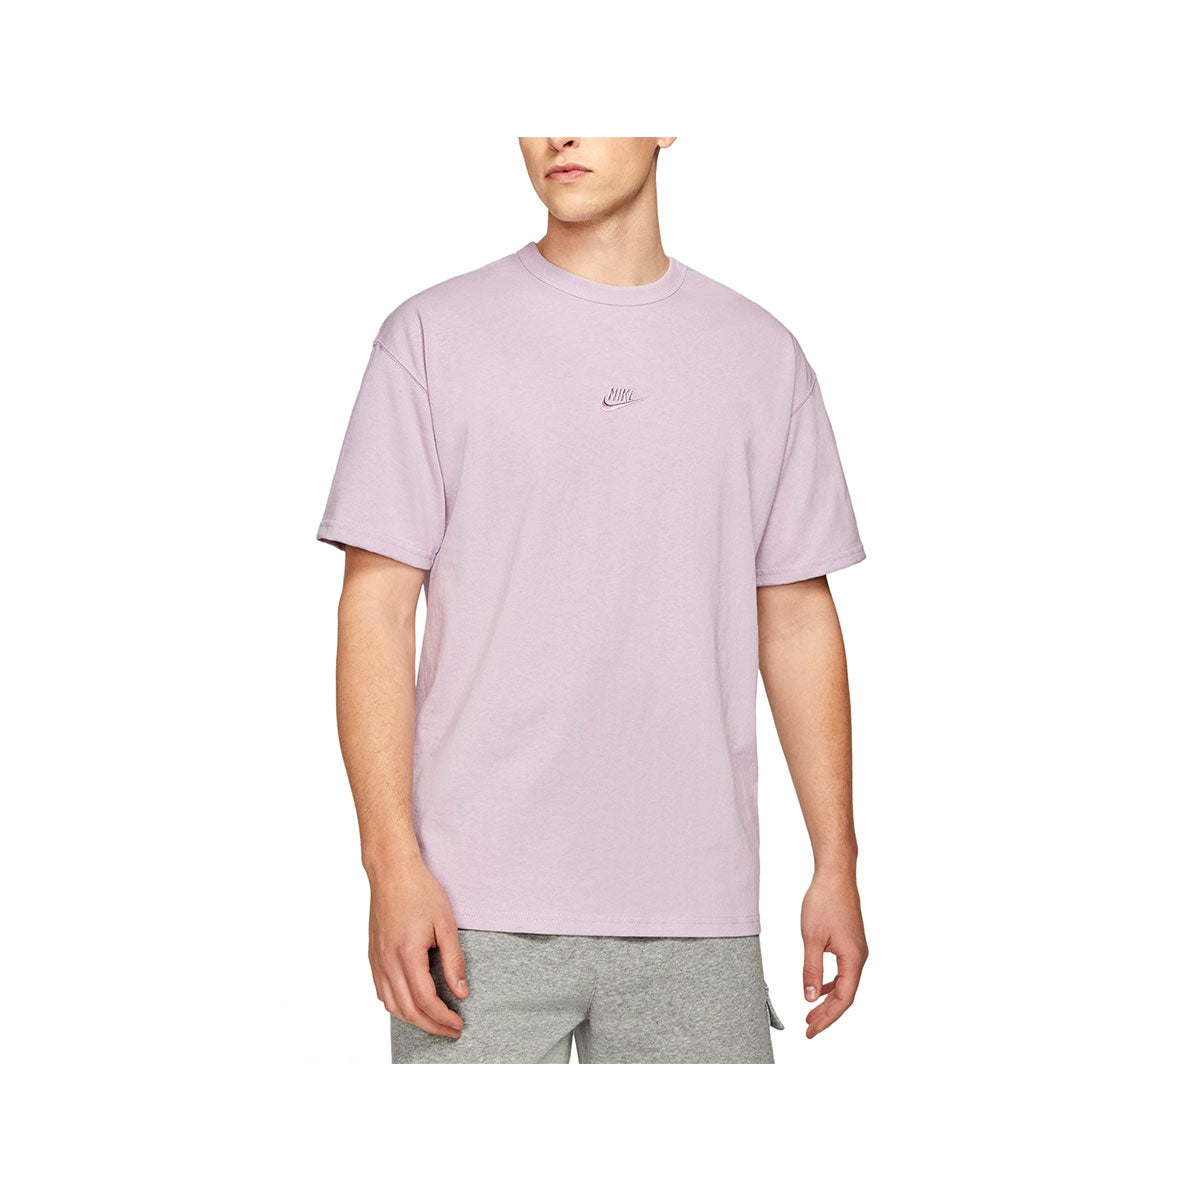 Nike Men's Premium Essential T-Shirt